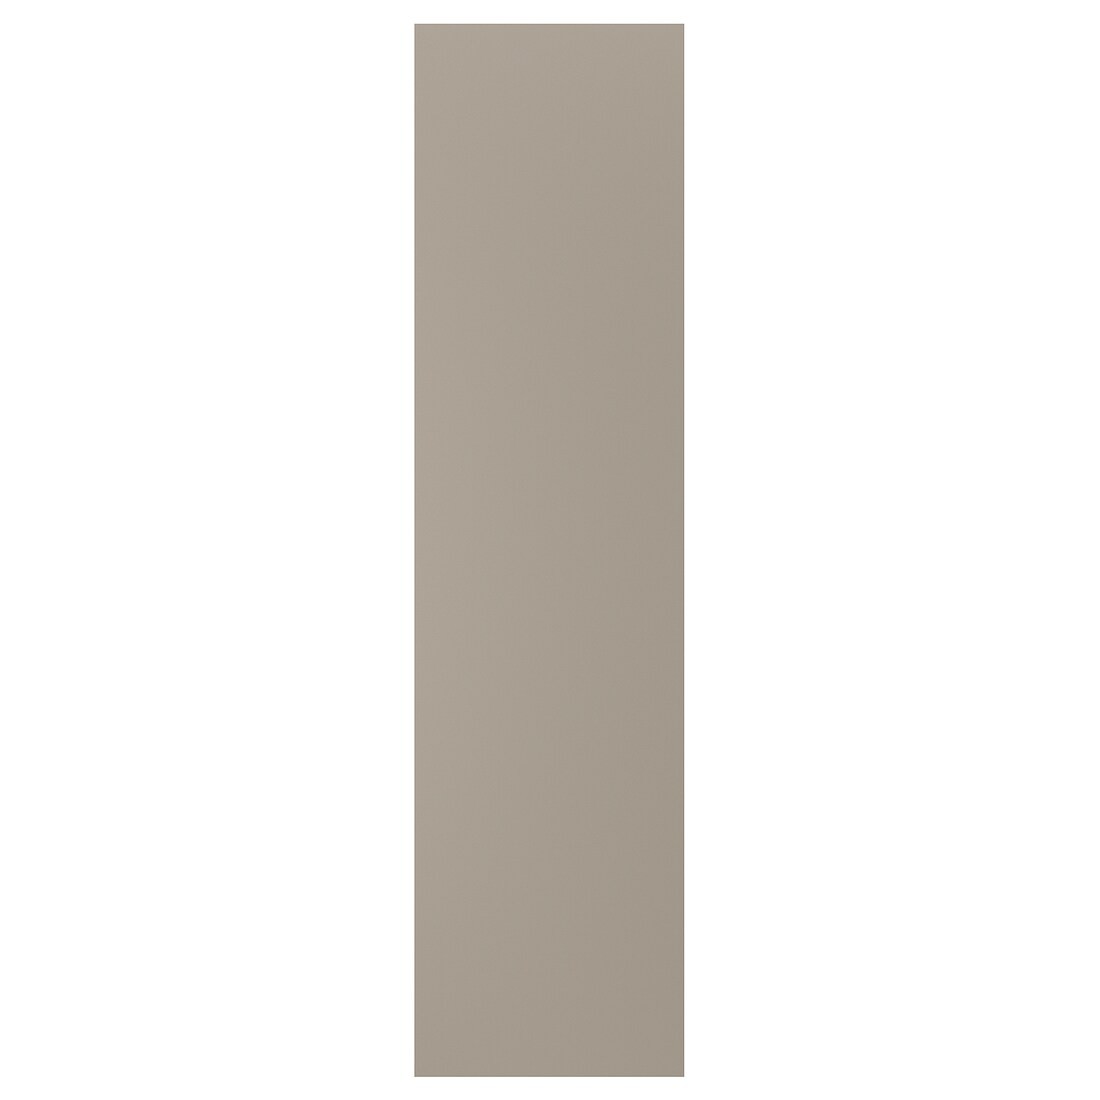 UPPLÖV Накладная панель, Матовый темный бежевый, 62x240 см